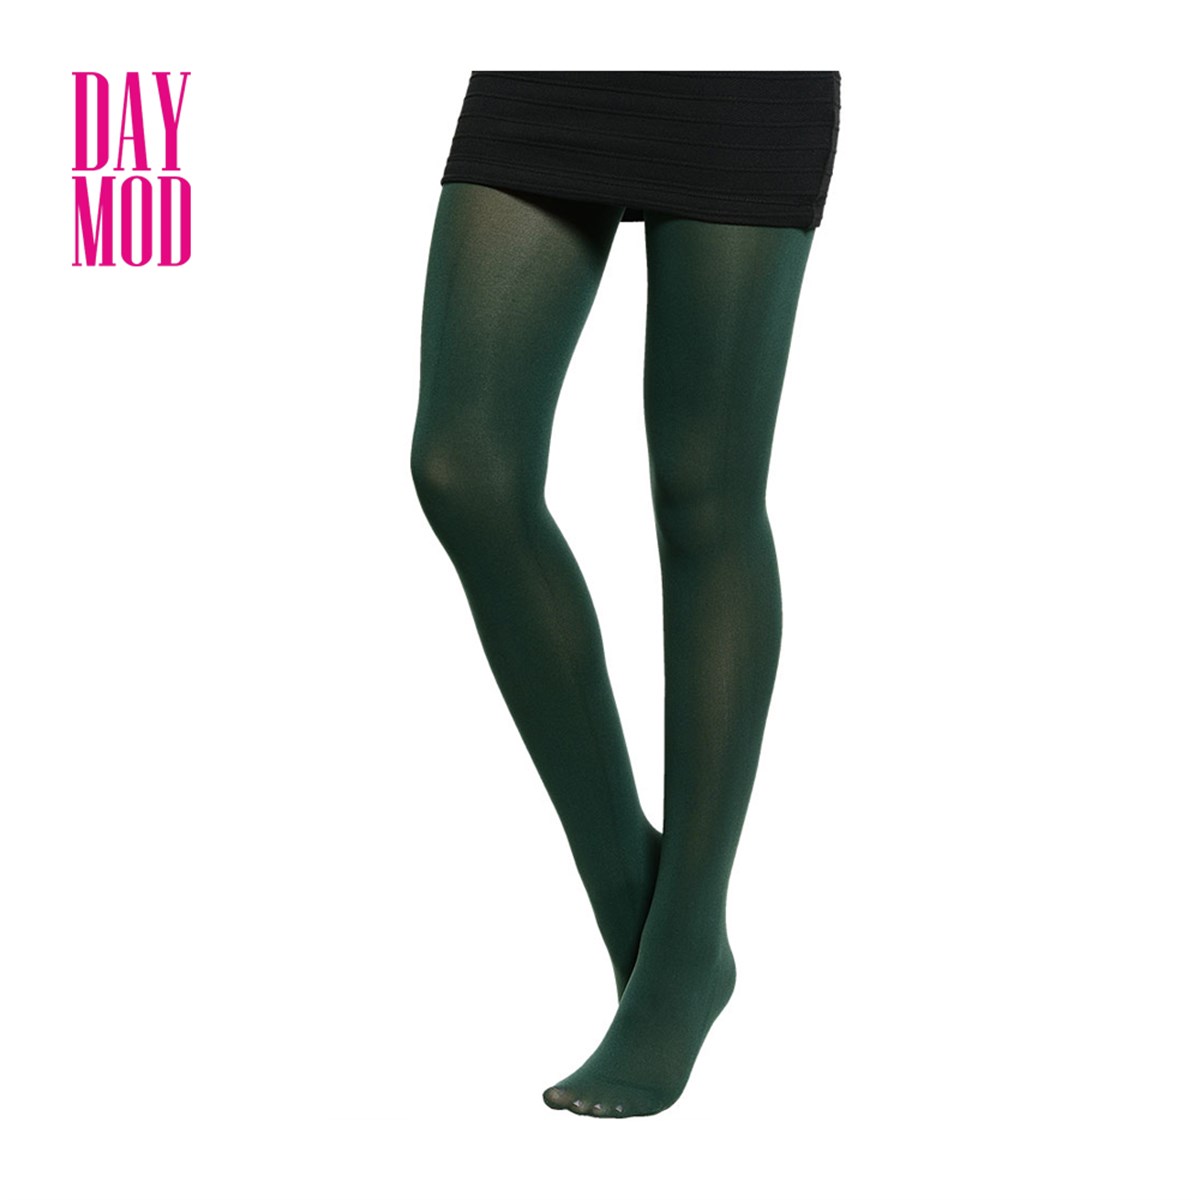 DayMod Mycro 50 Külotlu Çorap 28/Nefti Yeşil Beden.3 - Platin